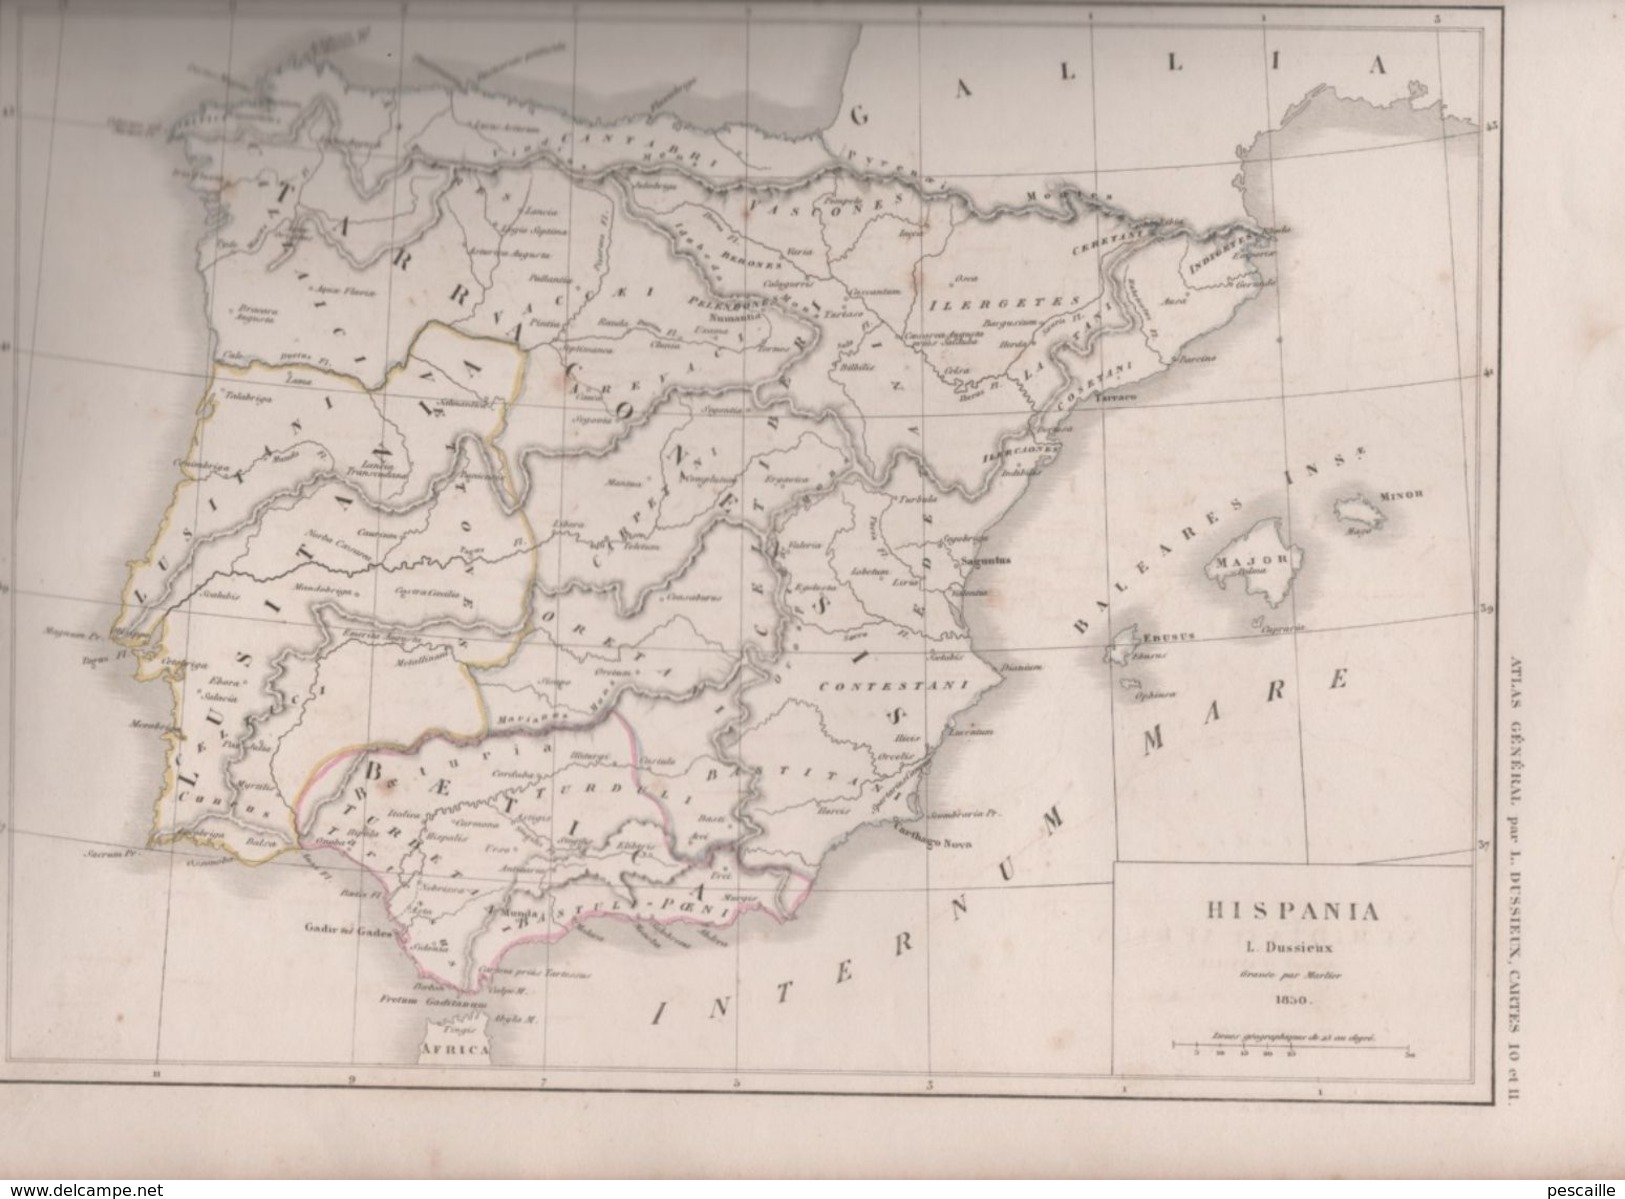 2 CARTES HISPANIA / NUMIDIA ET AFRICA Auctore D'ANVILLE DRESSEES PAR L. DUSSIEUX 1850 - ANTIQUITE - Mapas Geográficas